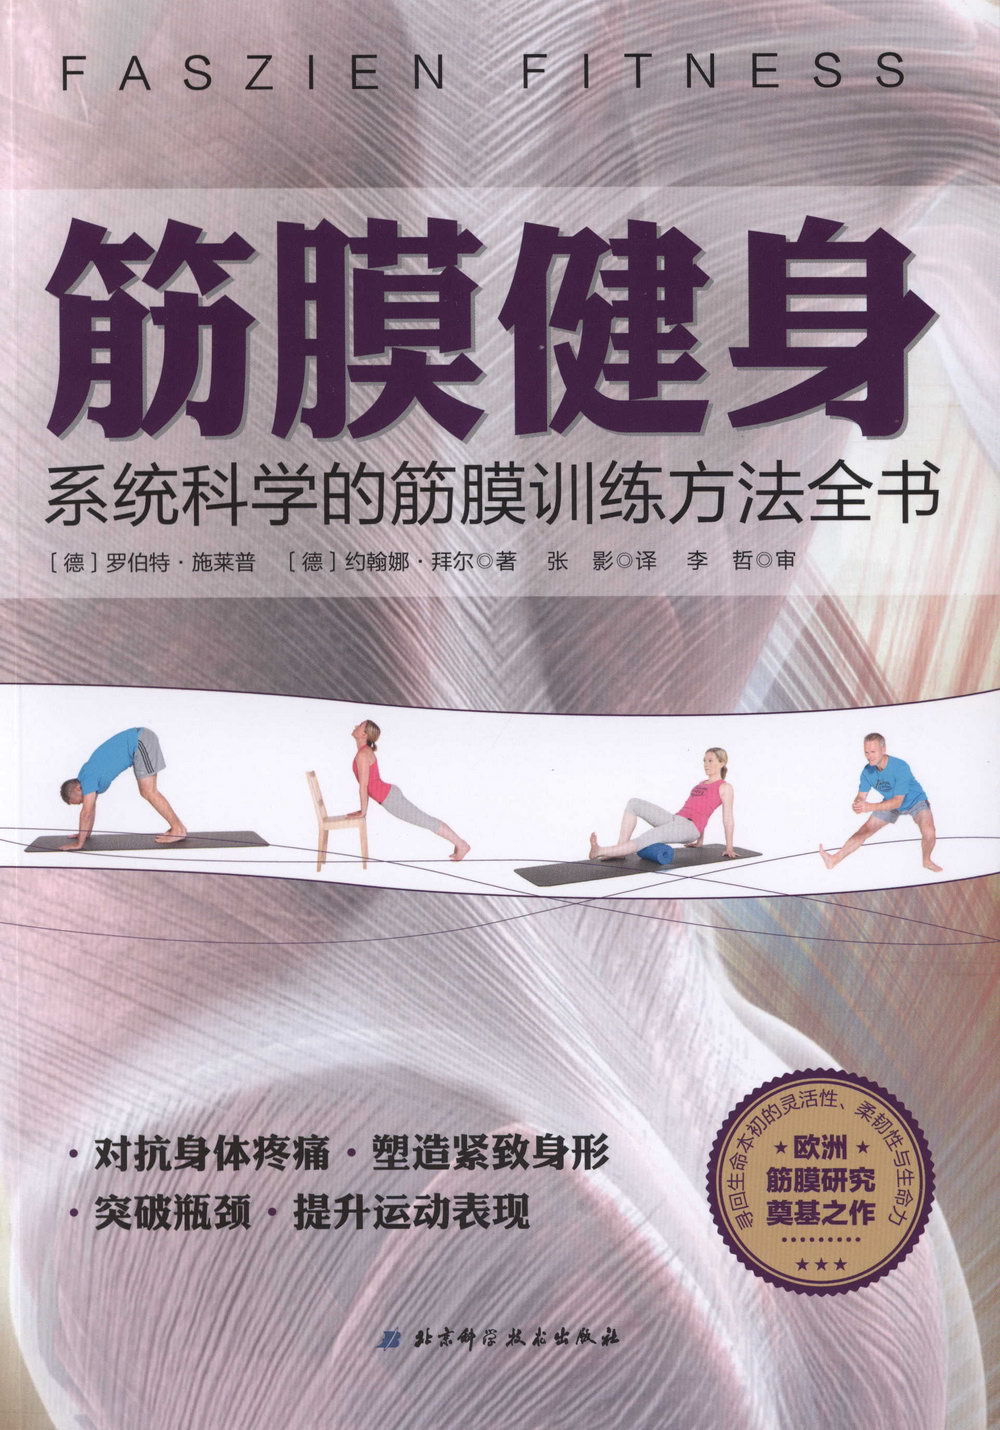 筋膜健身：系統科學的筋膜訓練方法全書